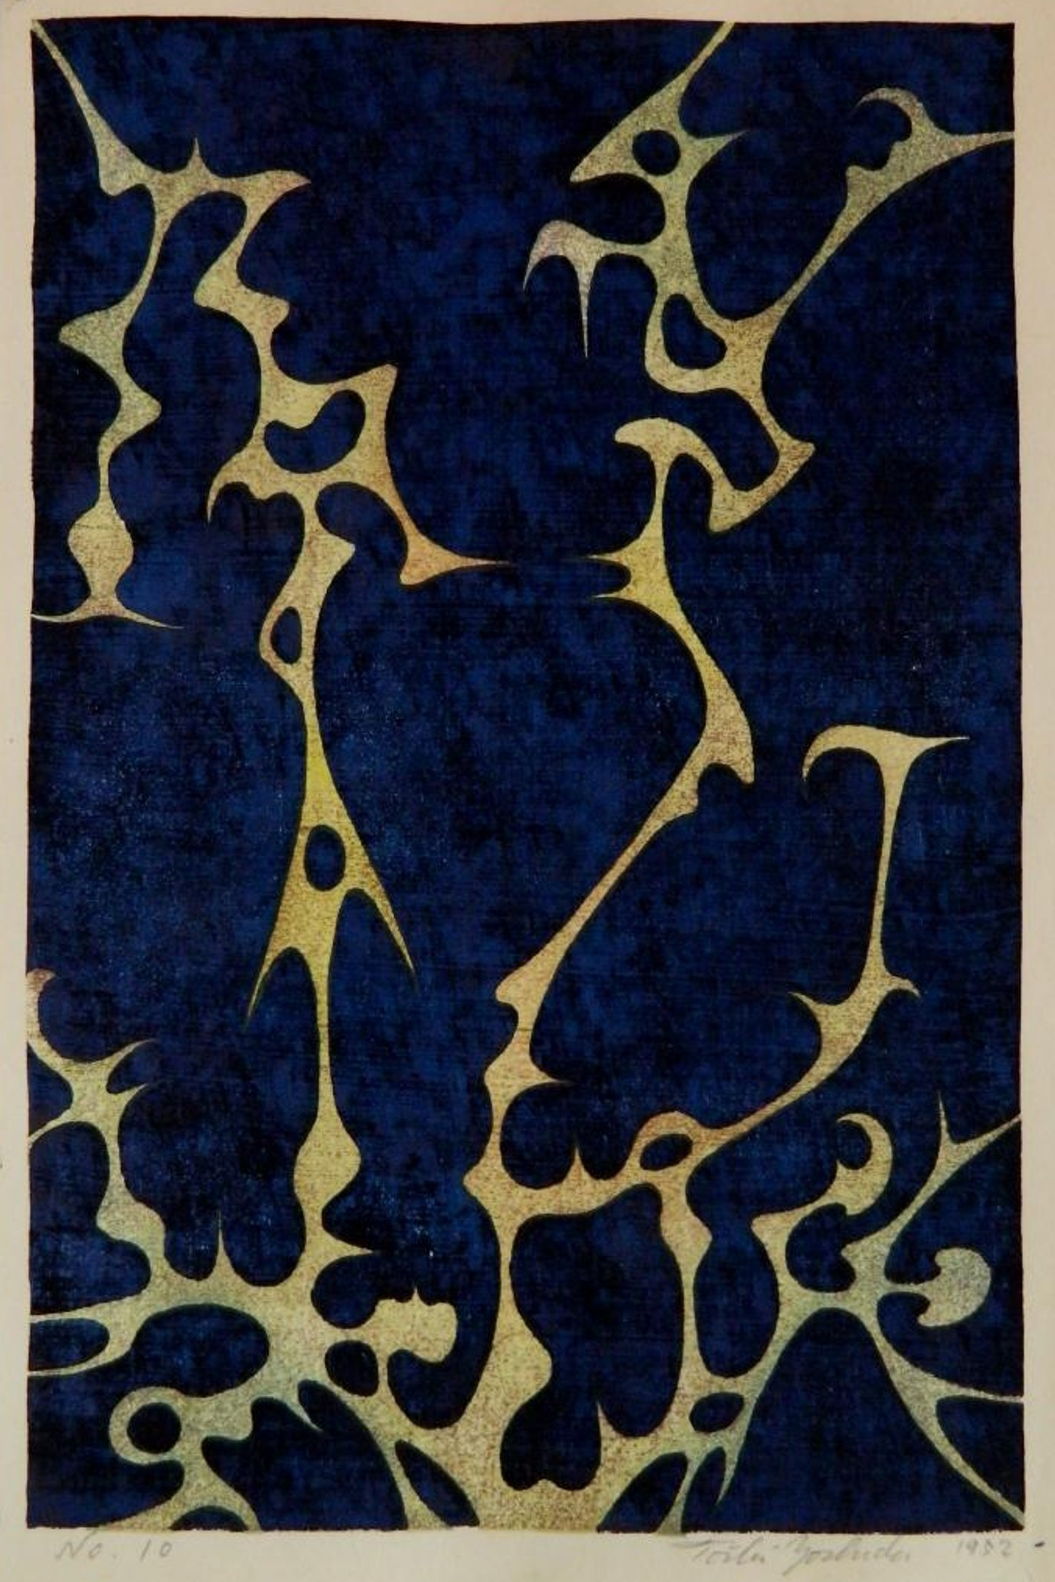 Toshi Yoshida “No. 10” 1952 woodblock print